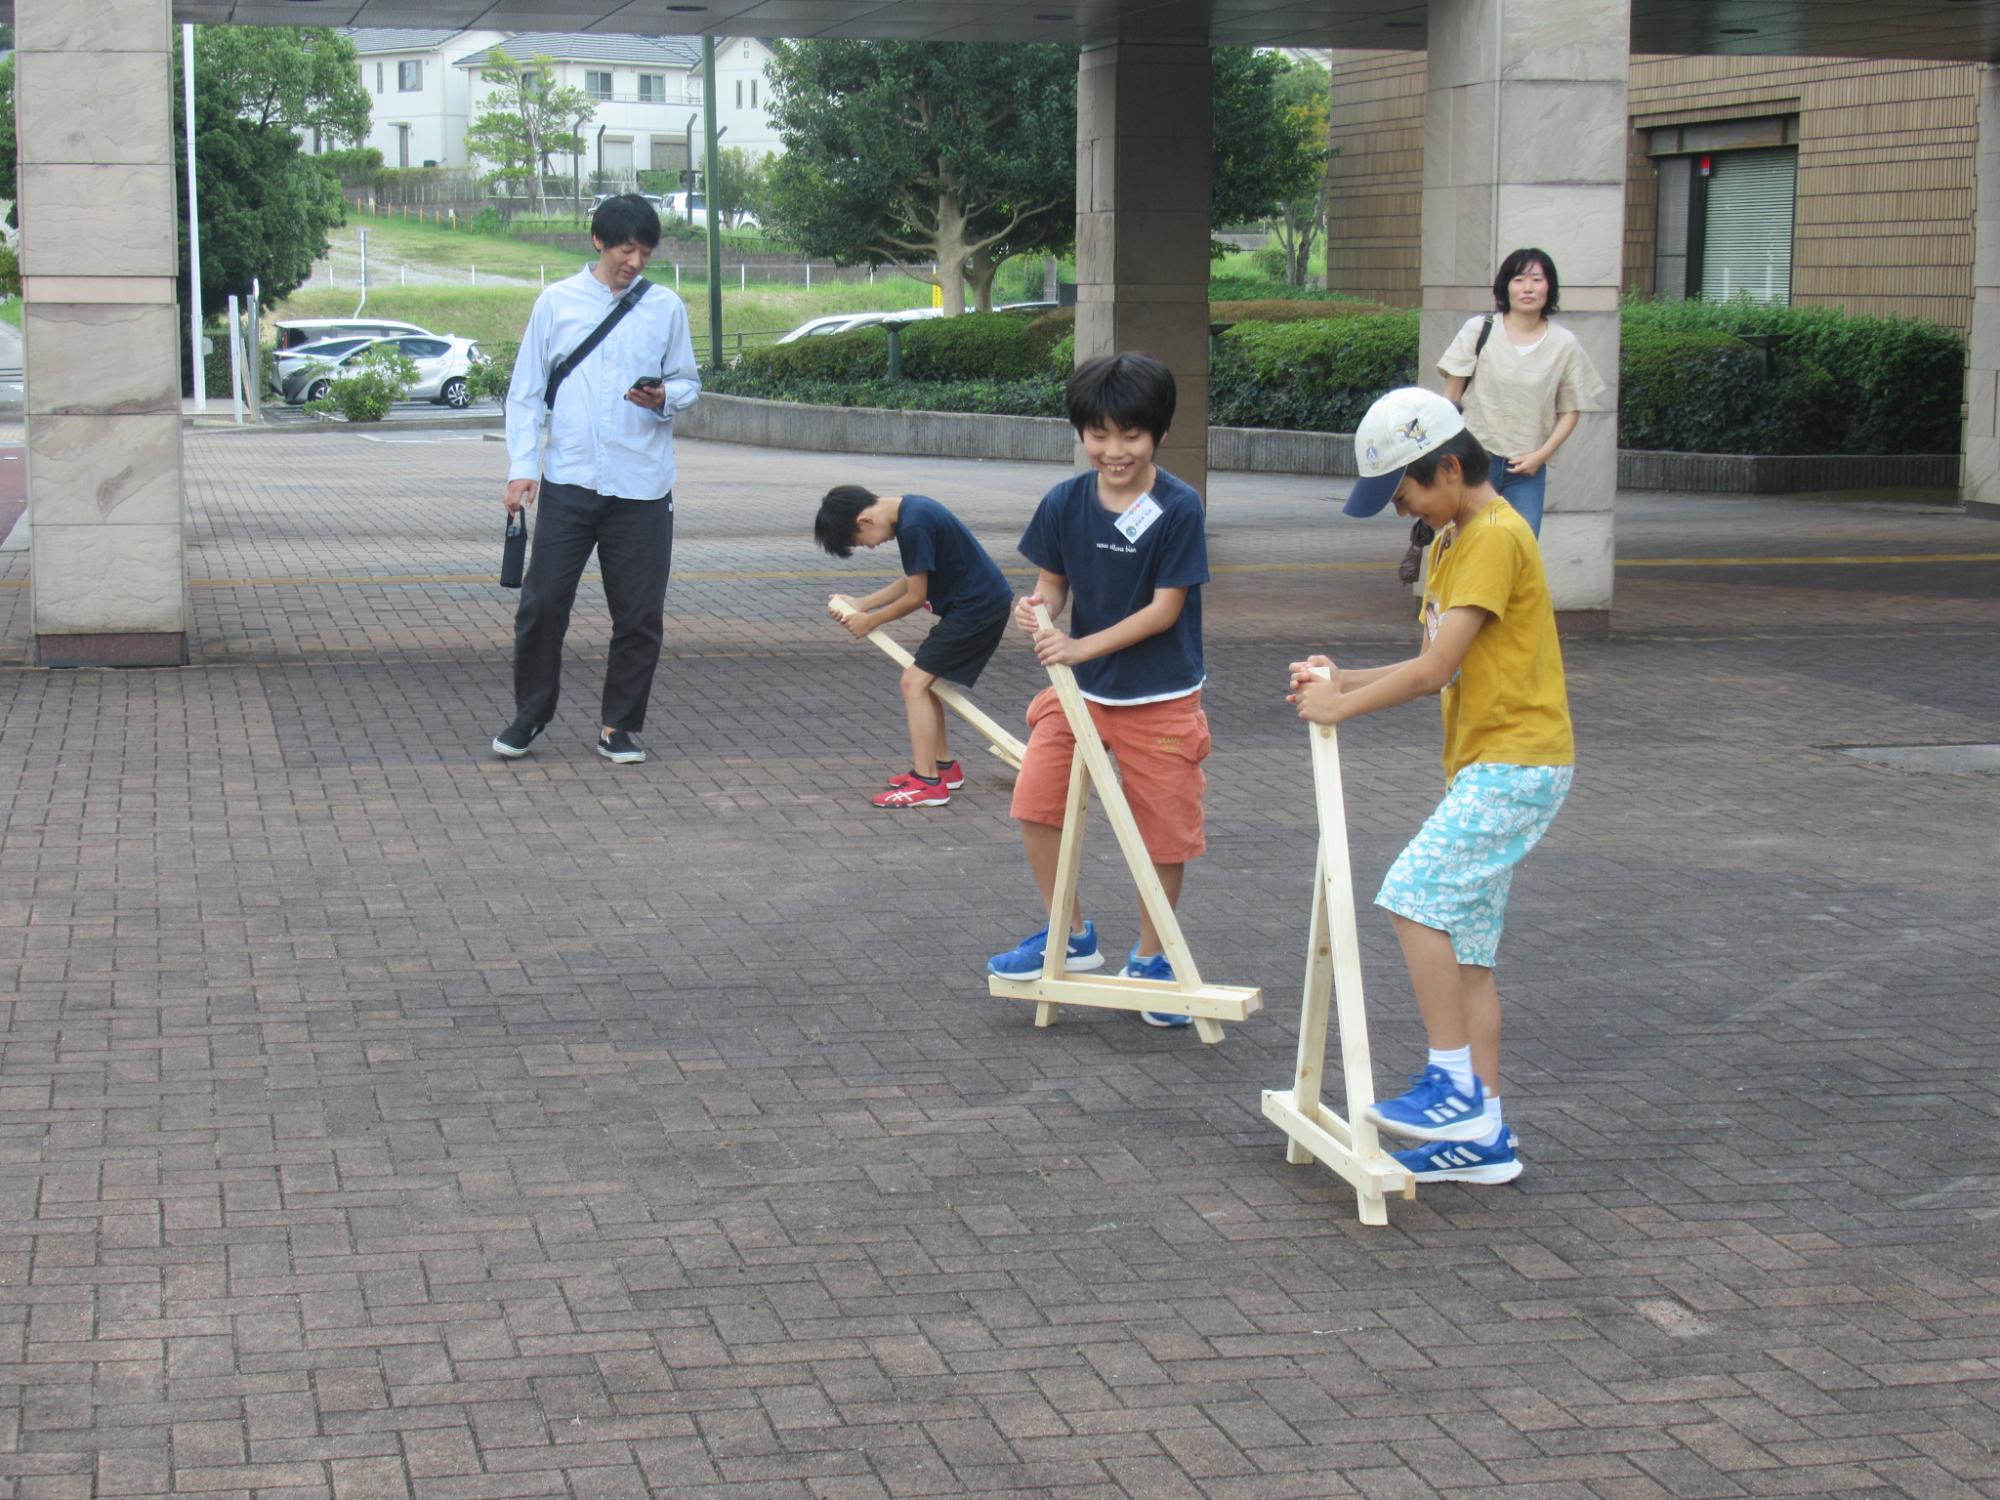 三角竹馬で遊ぶ子どもたち